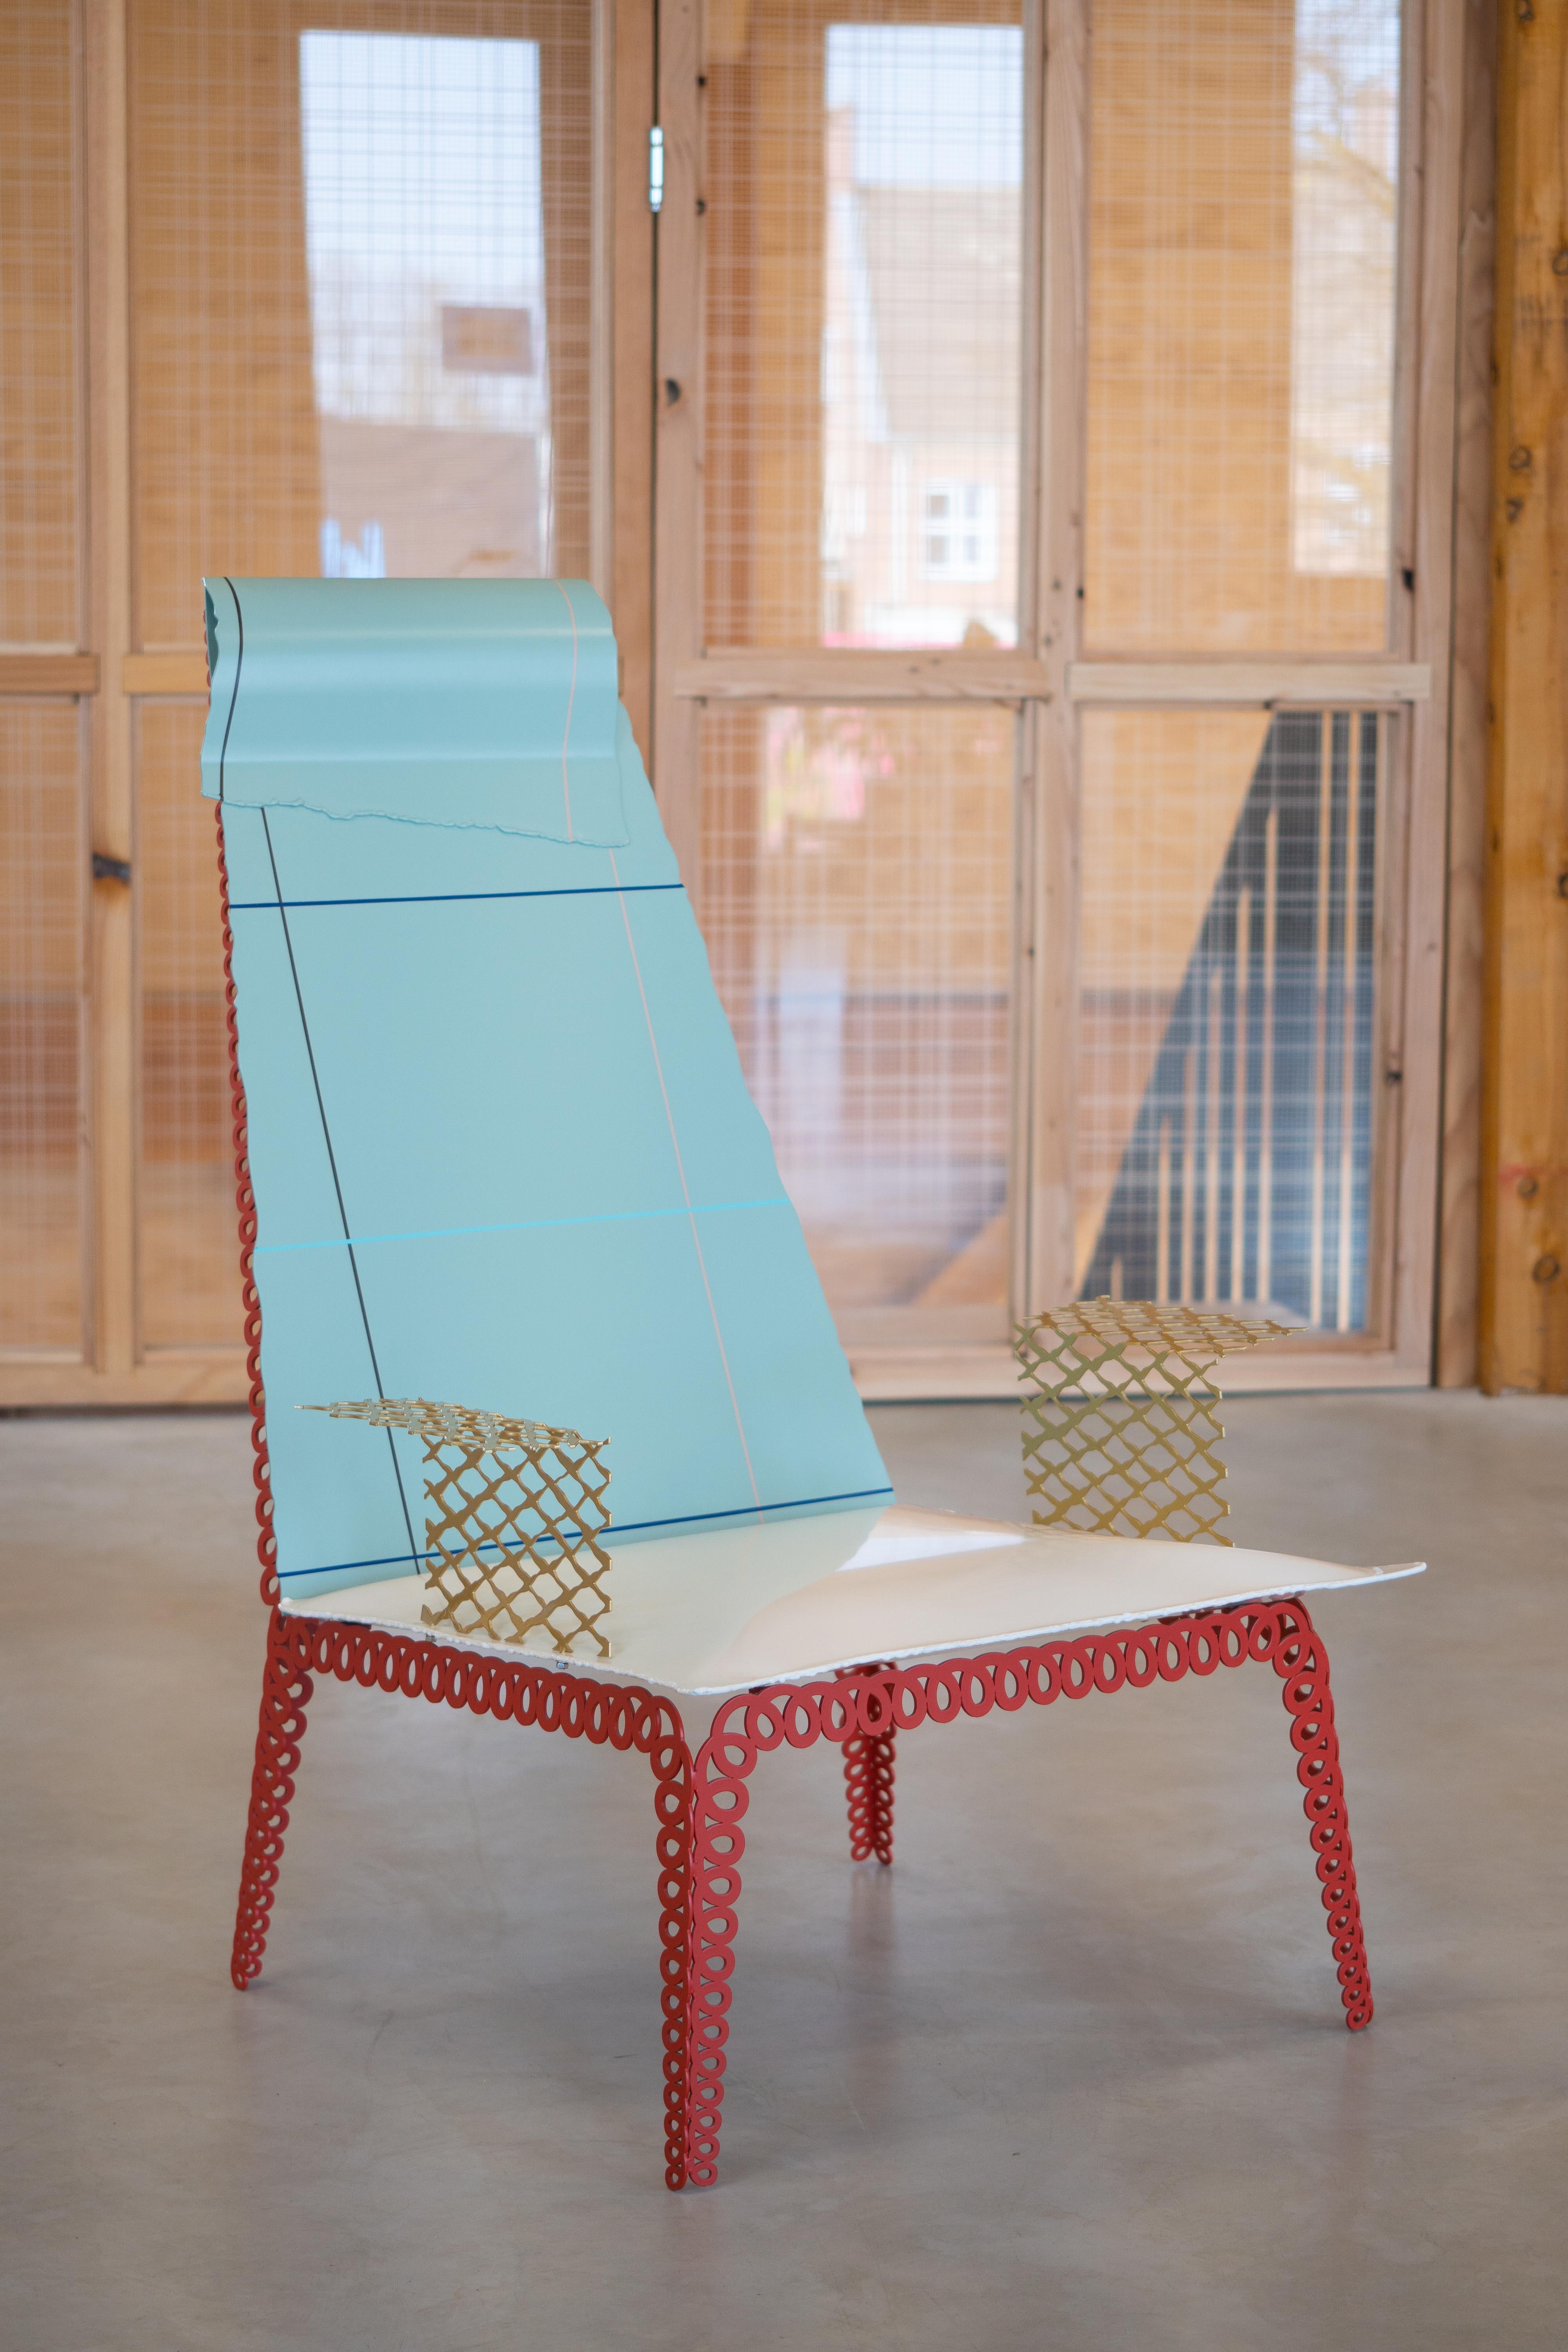 Kiki van Eijk conçoit une collection de meubles très conceptuelle qui utilise le métal pour capturer la nature délicate du tissu. Cette collection a l'air d'être faite de textiles mais est en fait façonnée à partir de métal solide. KIki utilise la